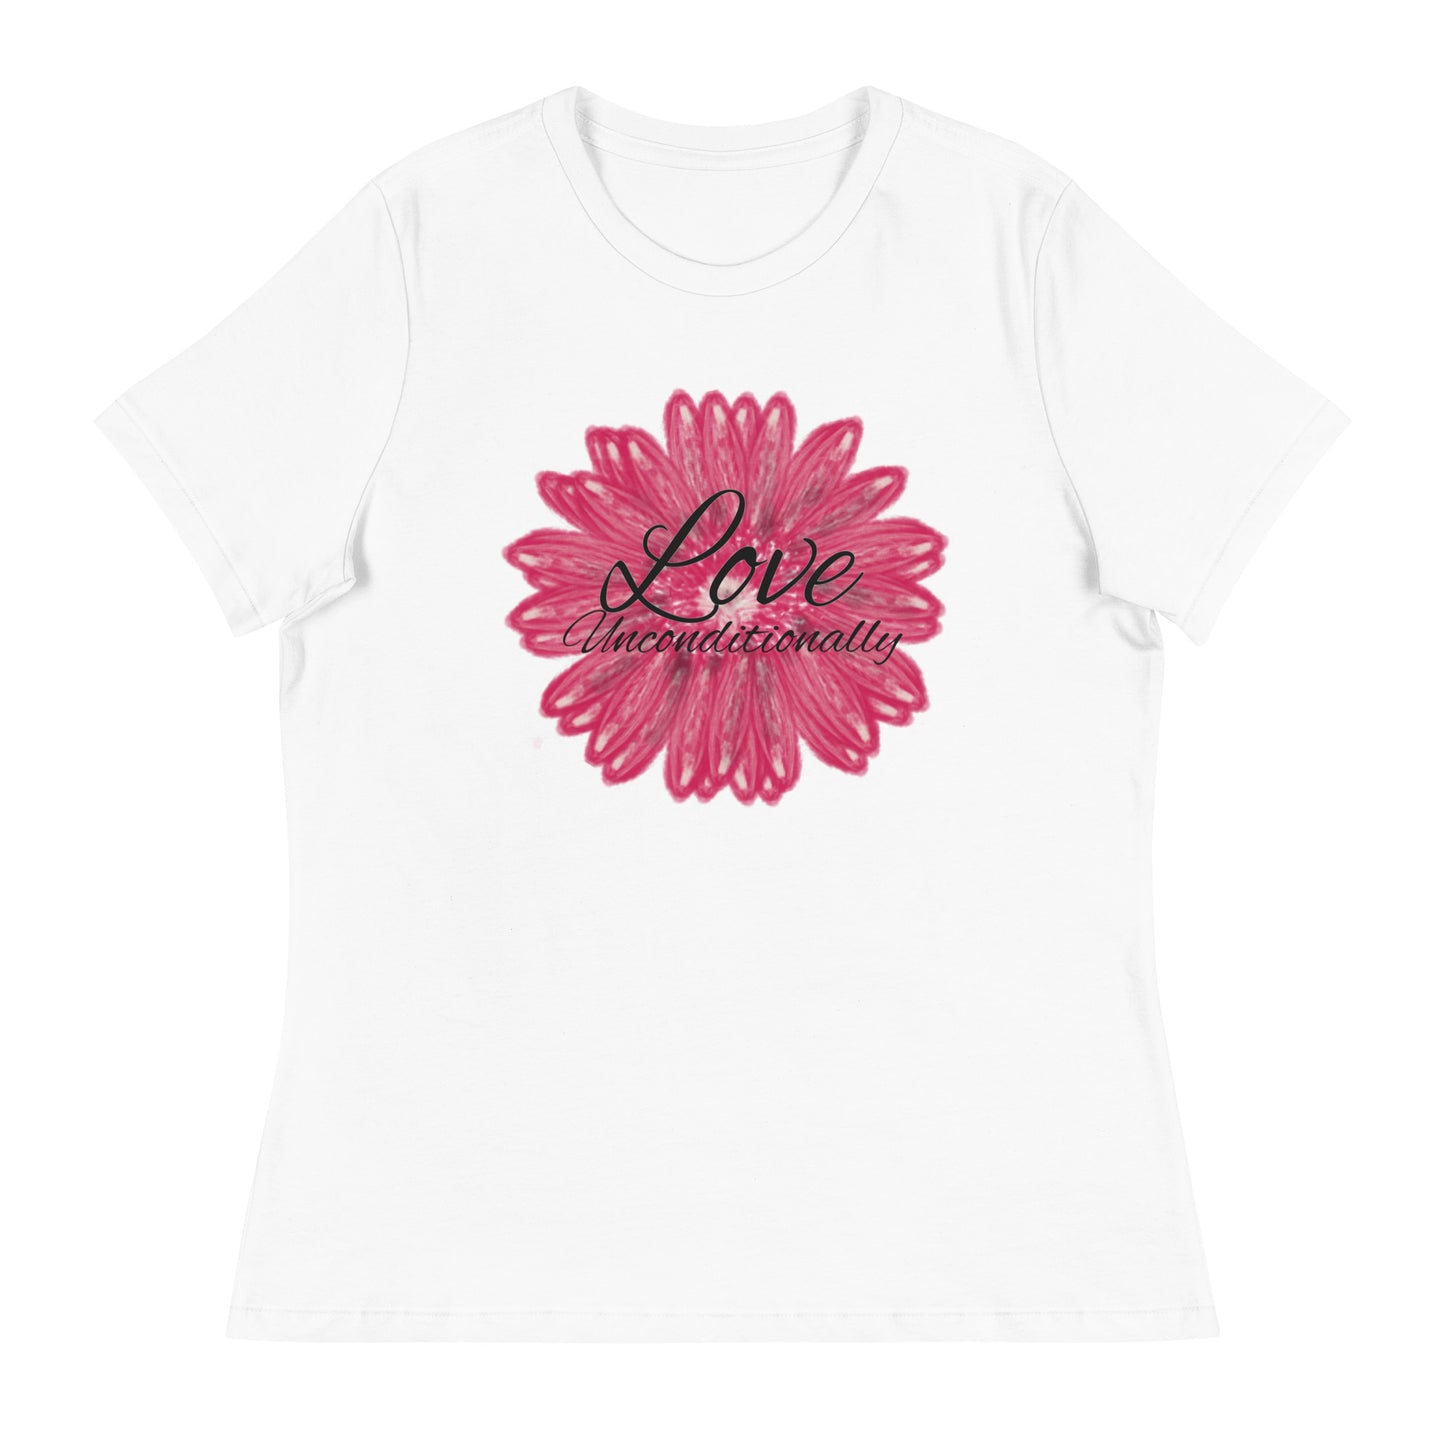 Women's Relaxed T-Shirt flower love